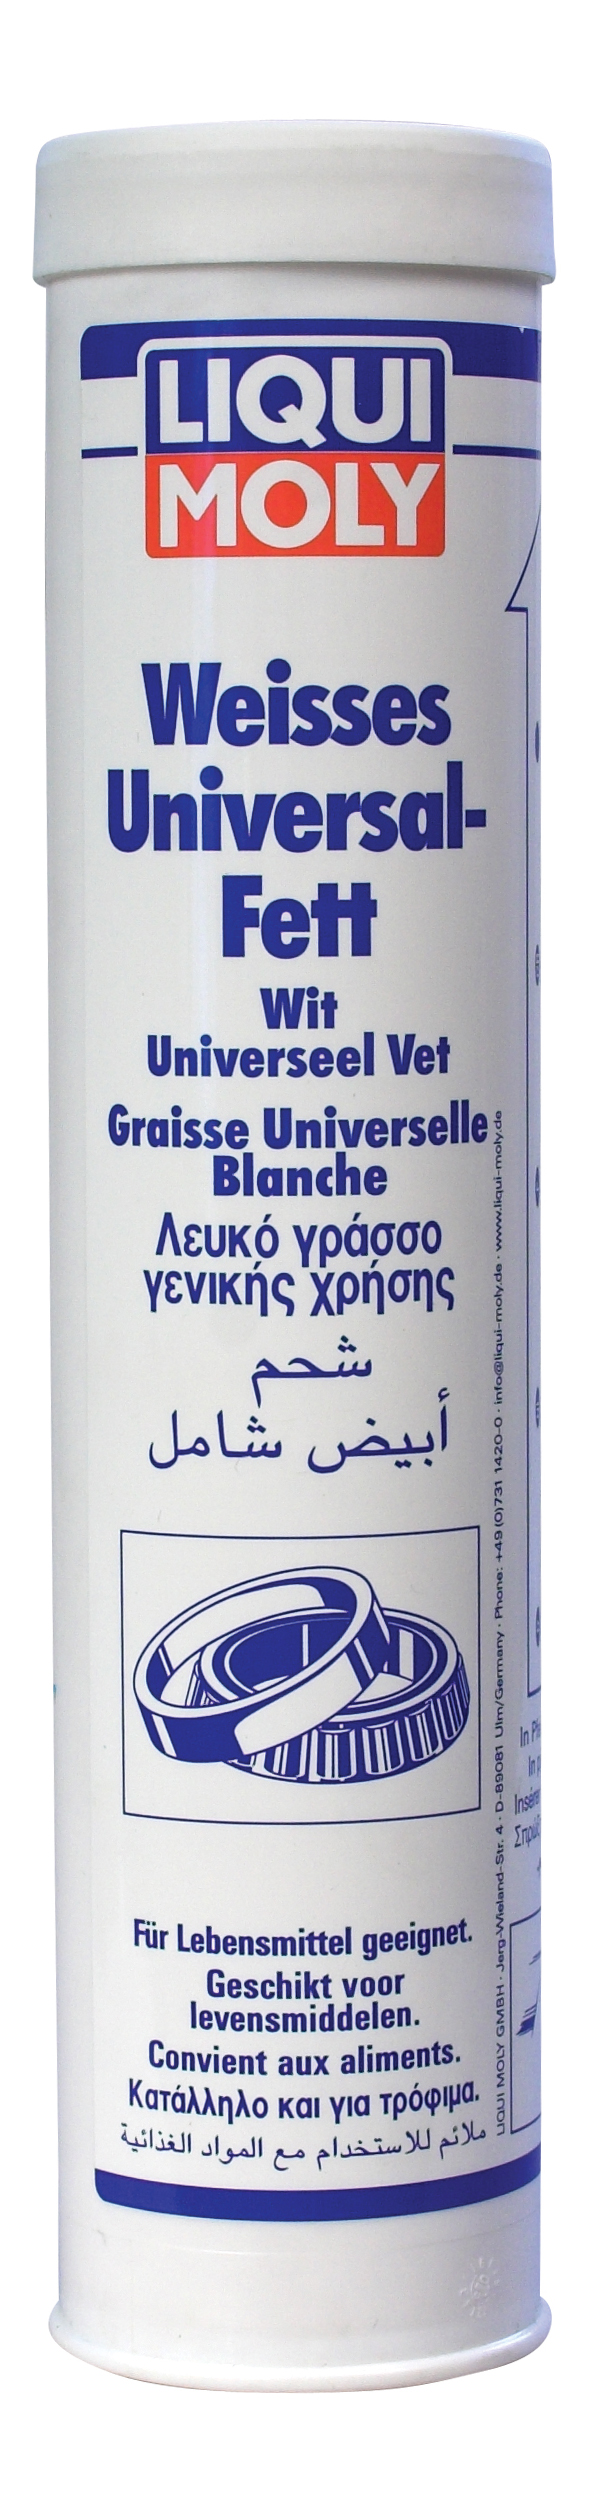 Белая универсальная смазка LIQUI MOLY 8918 Weisses Universal-Fett 0,4 кг